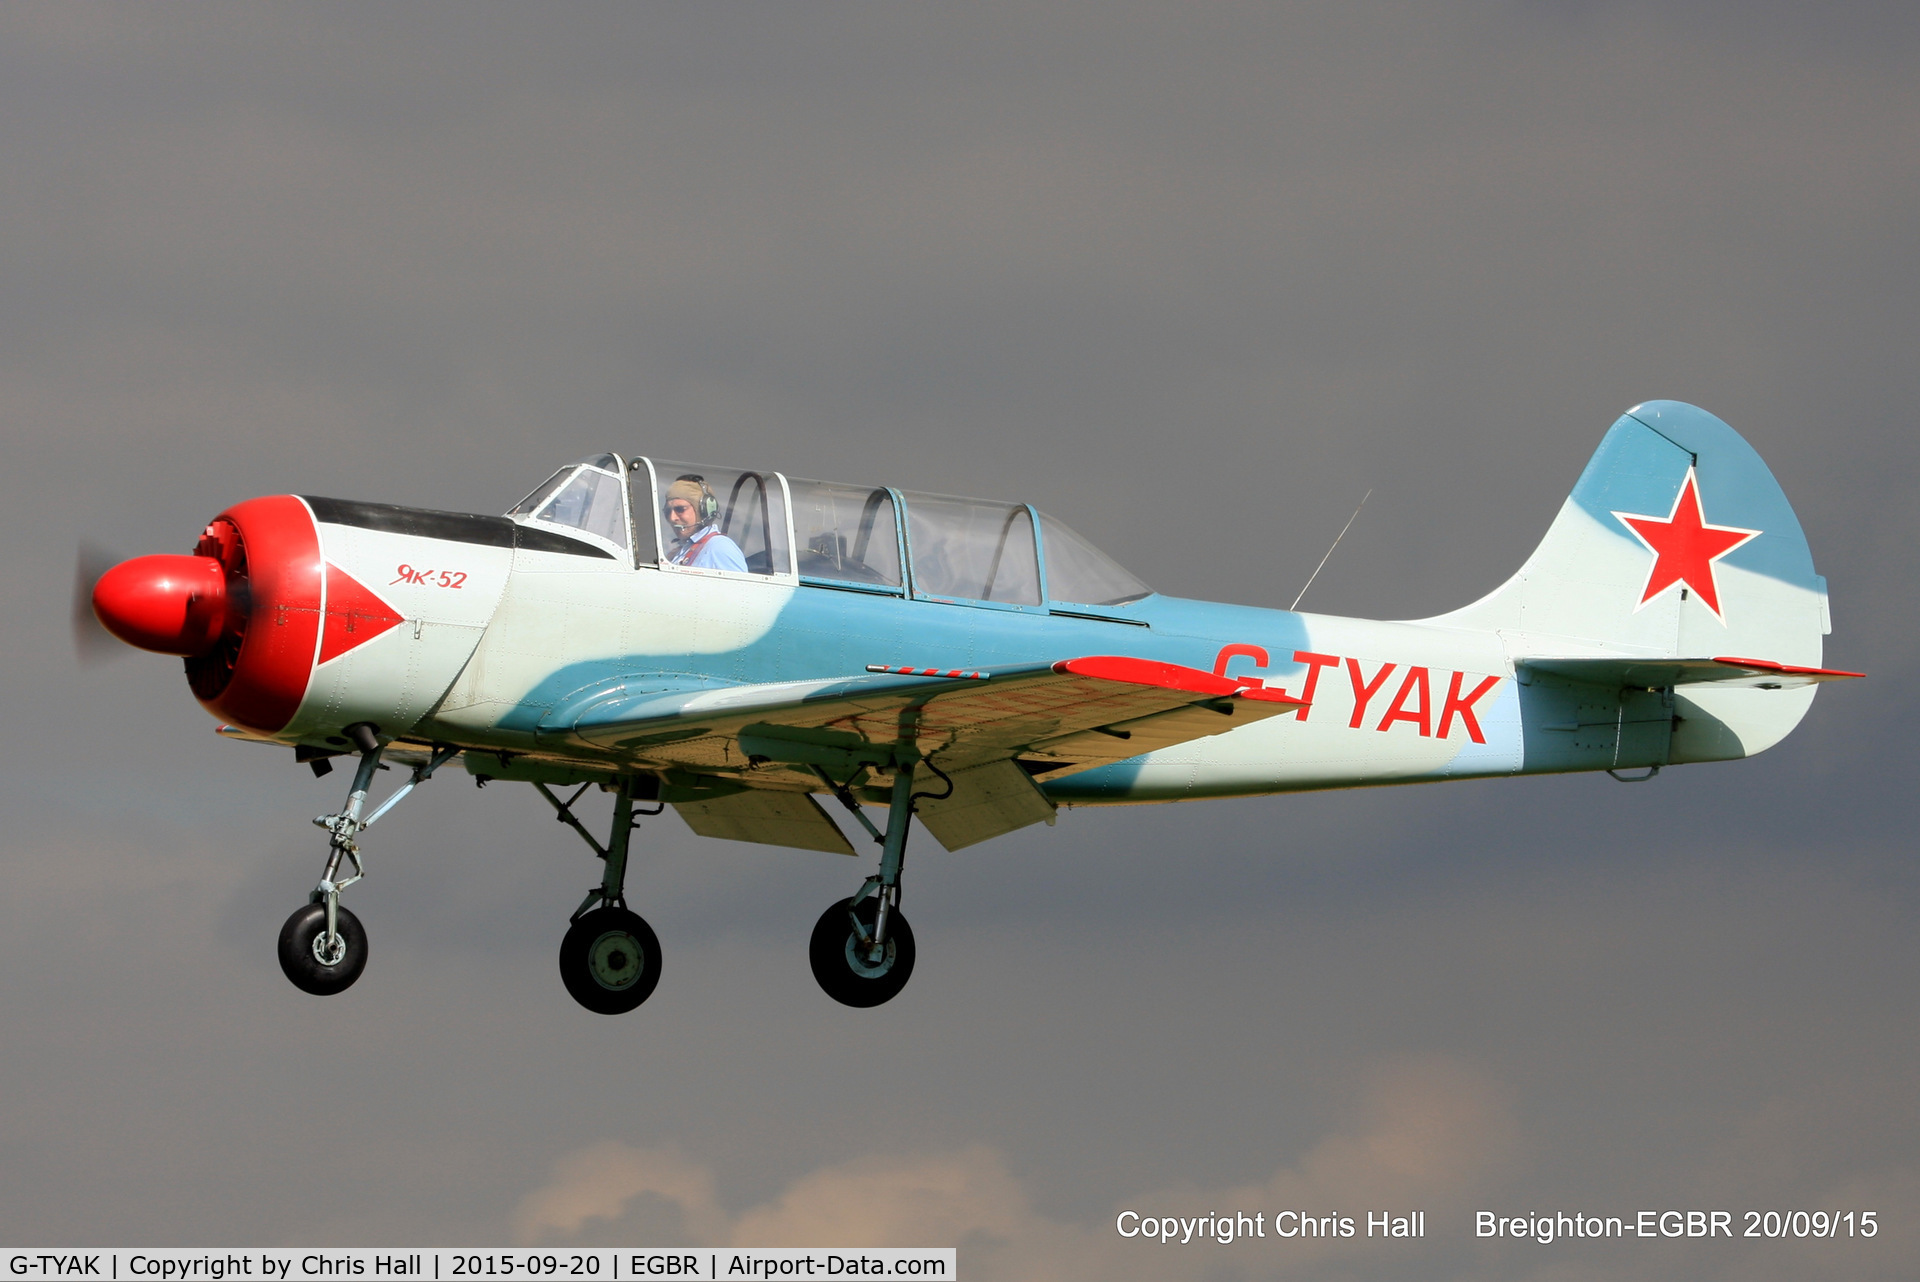 G-TYAK, 1989 Bacau Yak-52 C/N 899907, at Breighton's Heli Fly-in, 2015